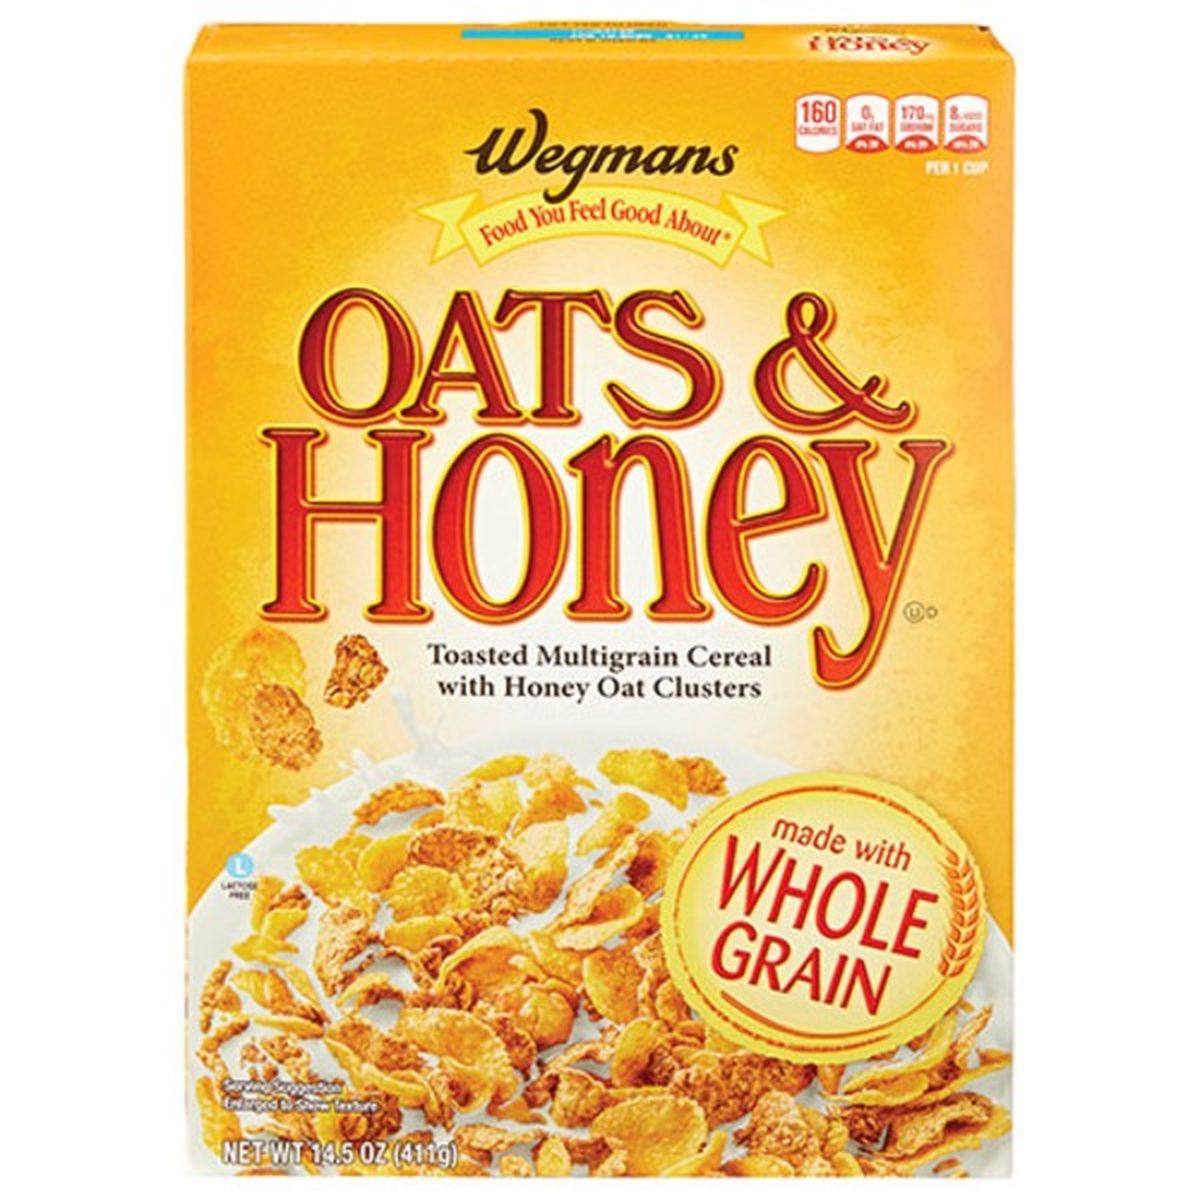 Calories in Wegmans Oats & Honey Cereal